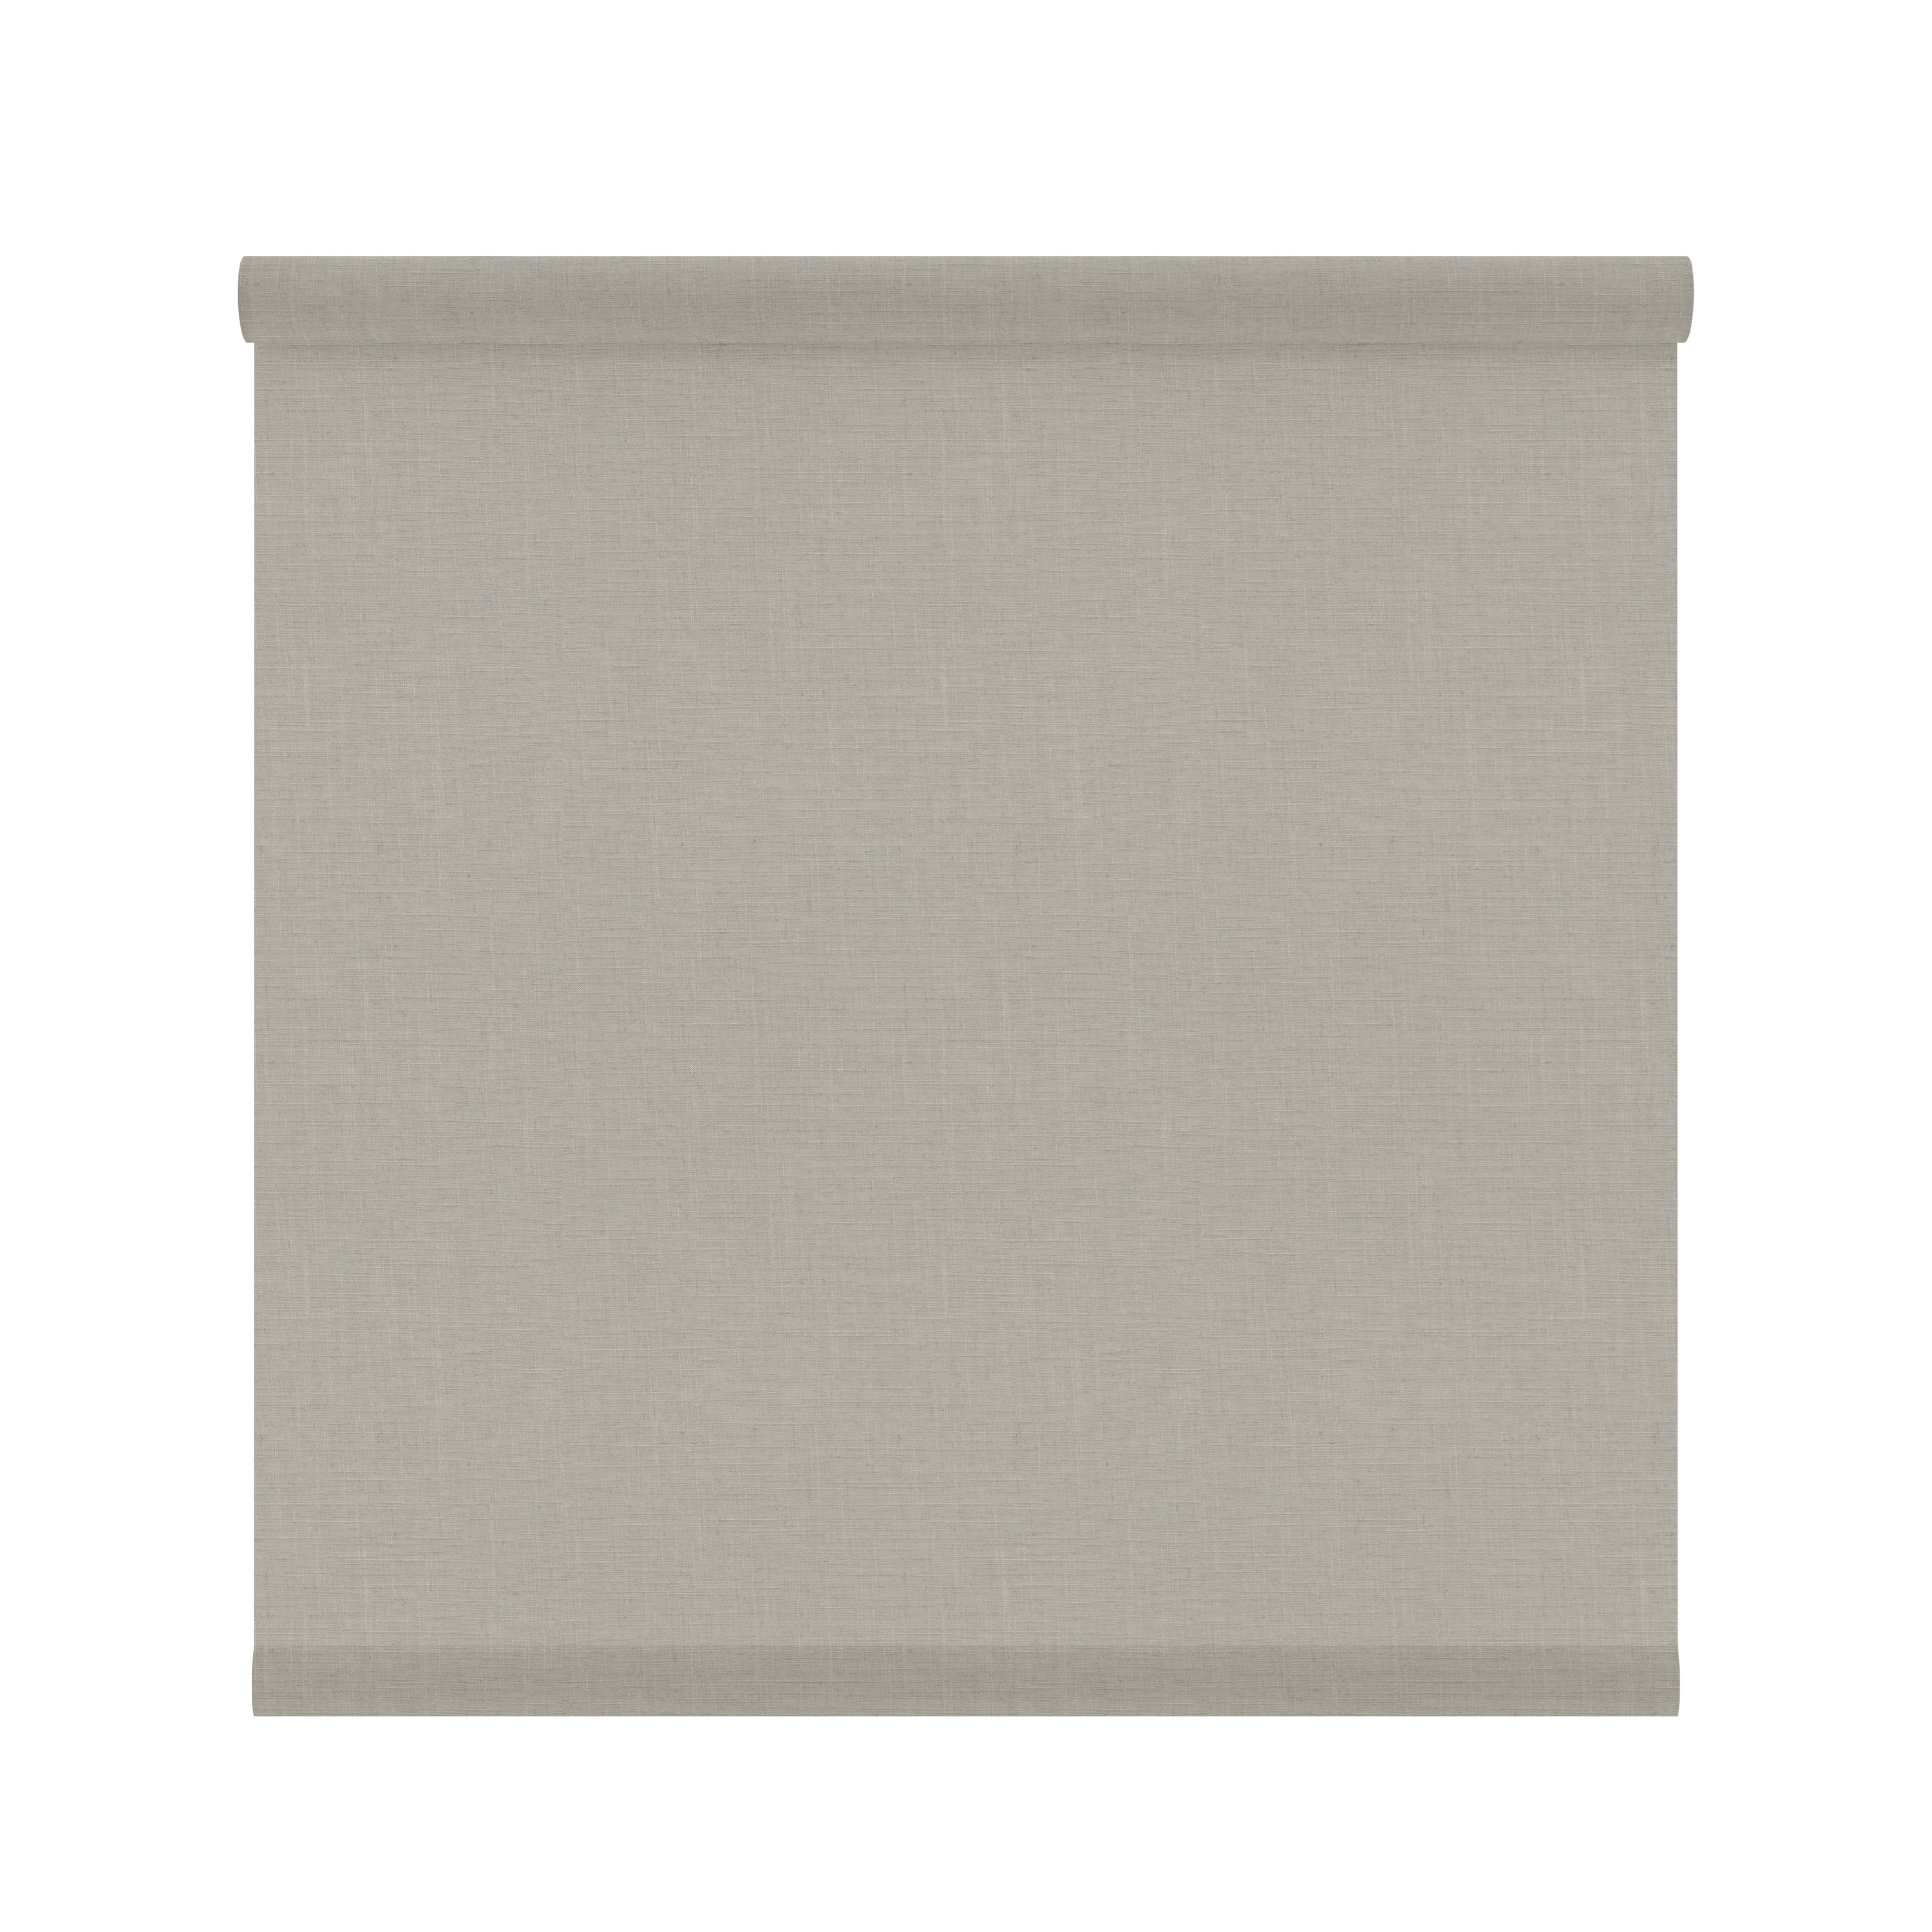 Tessuto per tende a rullo filtrante INSPIRE Brisbane beige 197 x 250 cm - 3